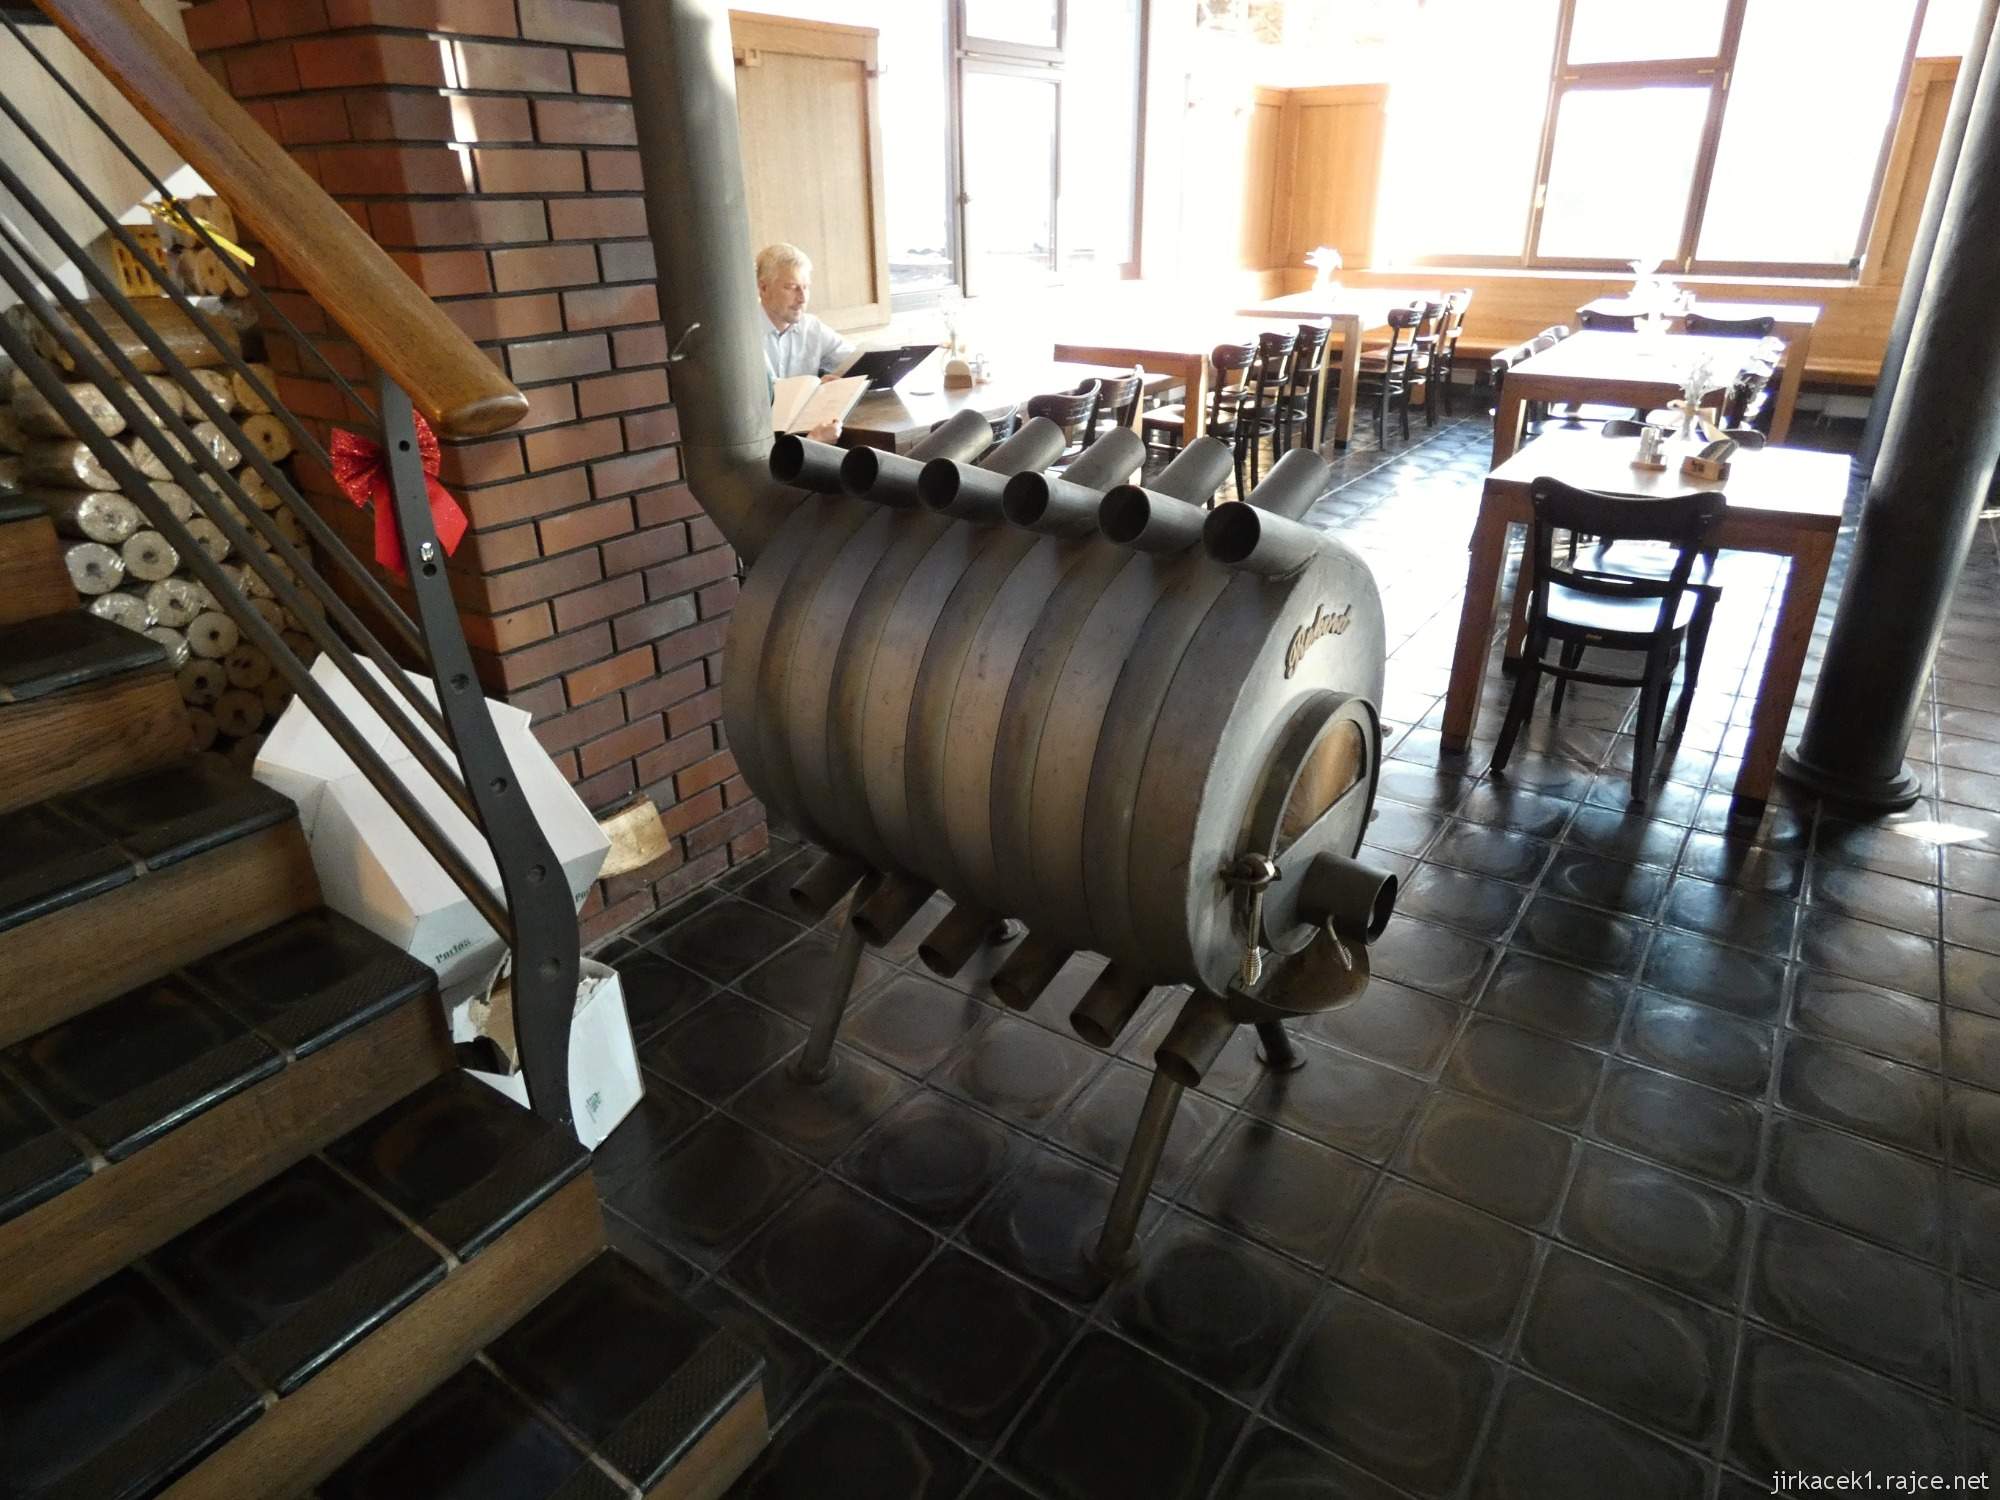 Valašské Meziříčí - Krásenský pivovar - industriální styl restaurace